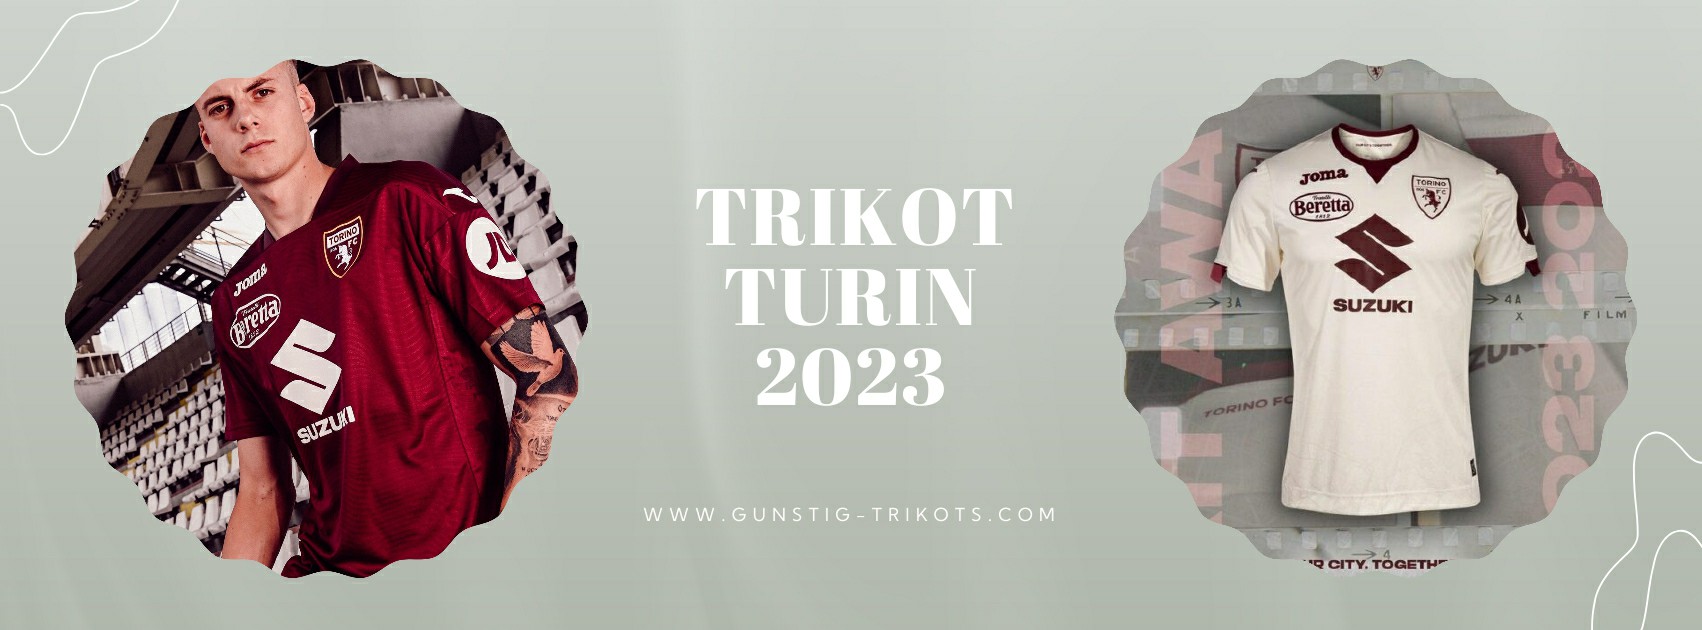 Turin Trikot 2023-2024